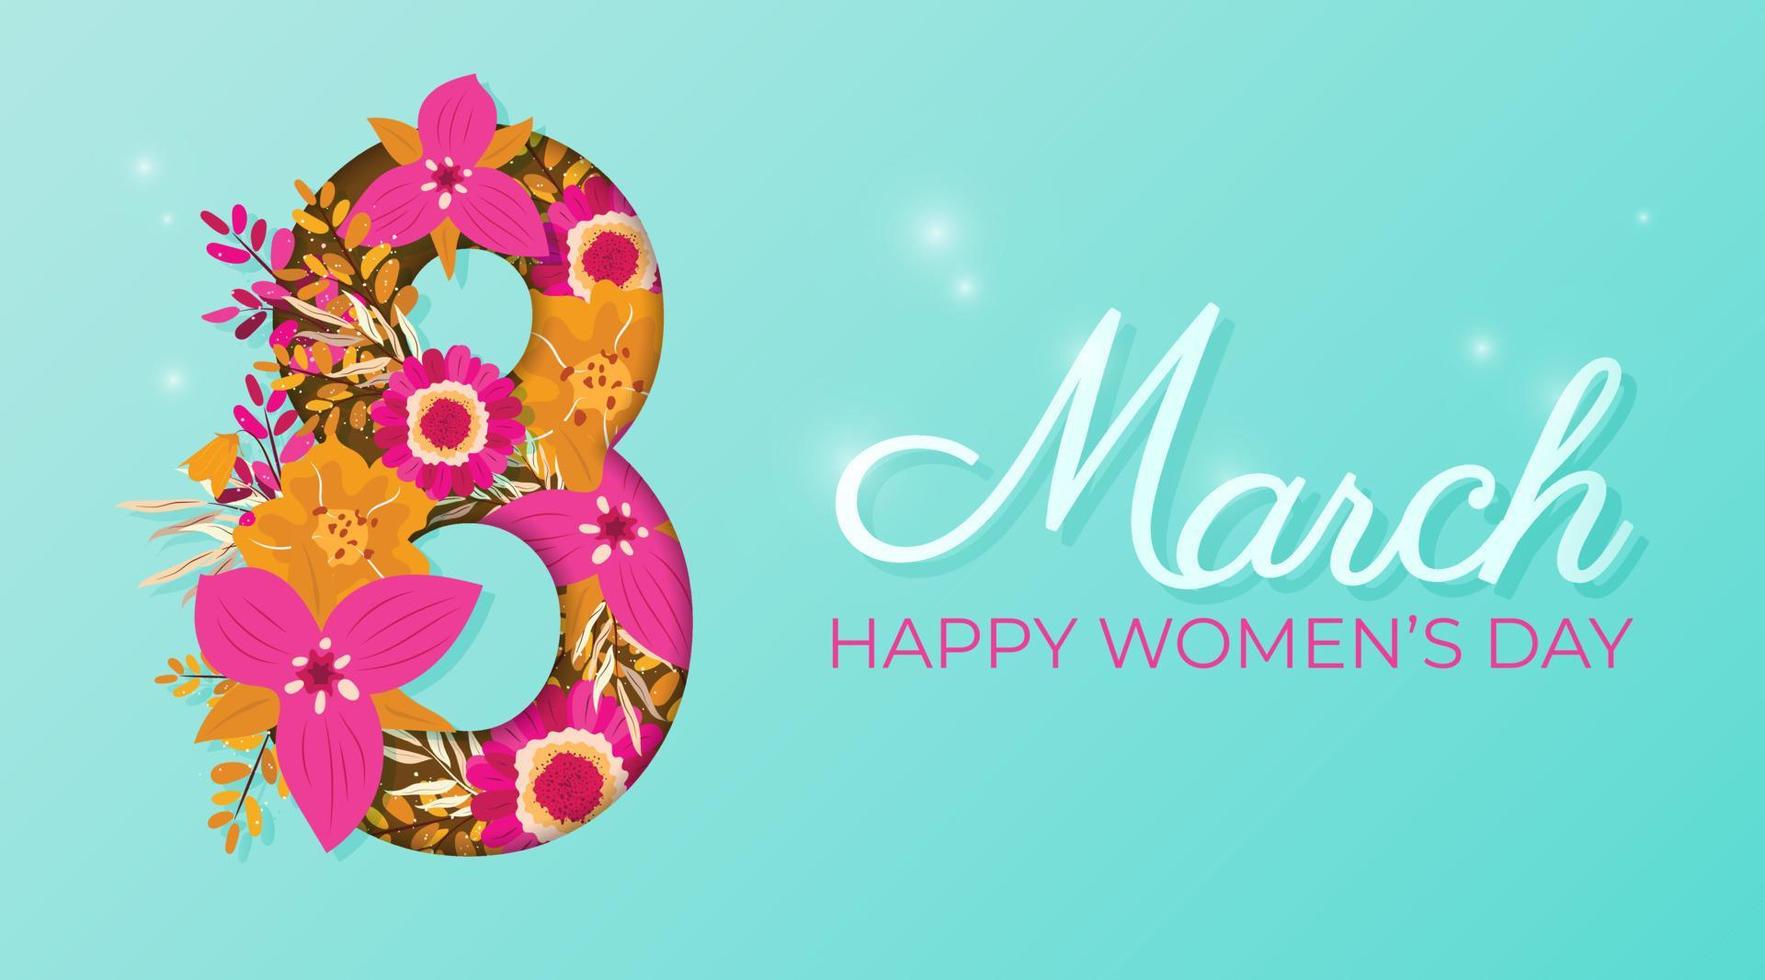 banier voor Internationale vrouwen dag. folder voor maart 8 met bloemen decor. aantal 8 uitnodigingen met voorjaar planten, bladeren en bloemen vector